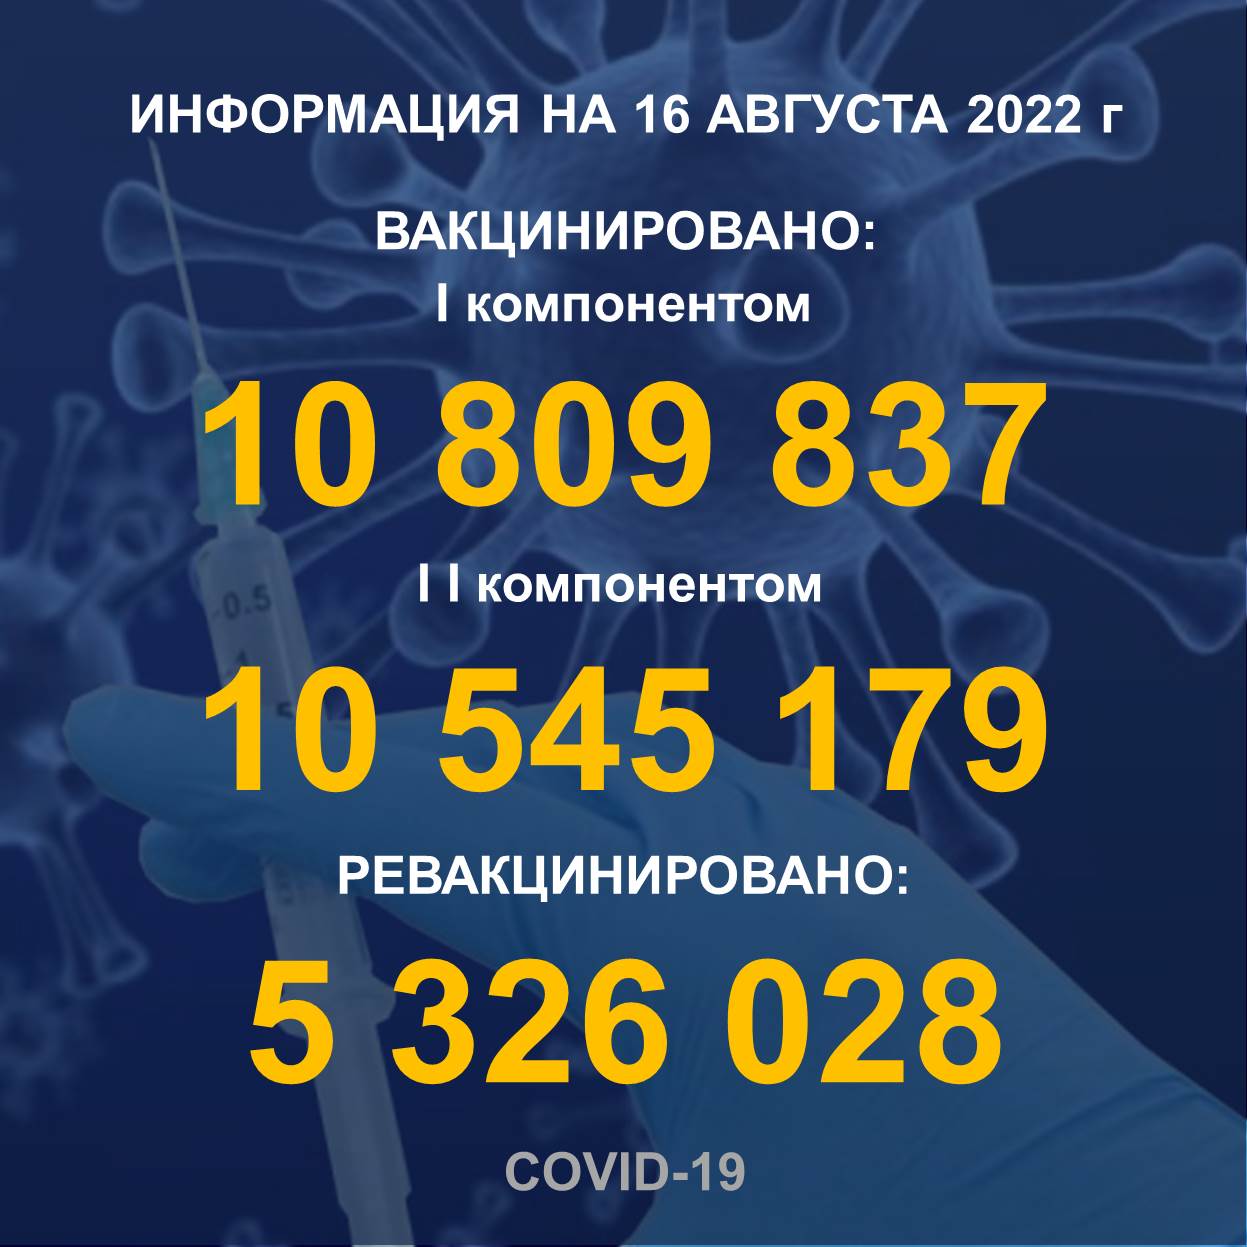 I компонентом 10 809 837 человек провакцинировано в Казахстане на 16.08.2022 г, II компонентом 10 545 179 человек. Ревакцинировано – 5 326 028